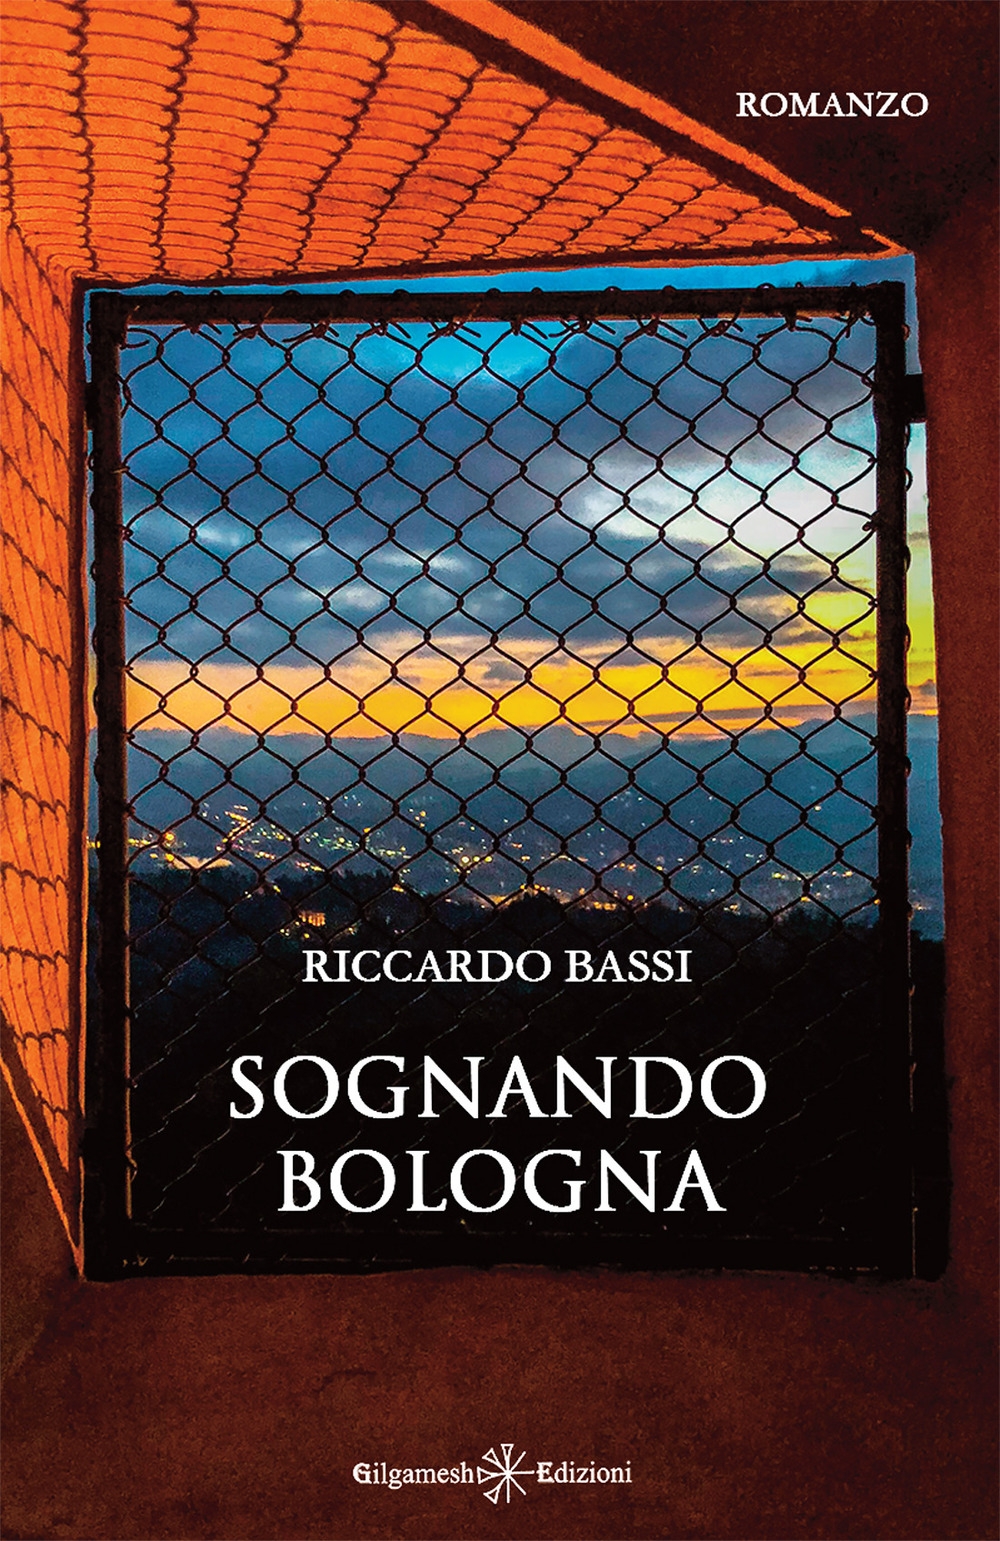 Sognando Bologna Riccardo Bassi Author